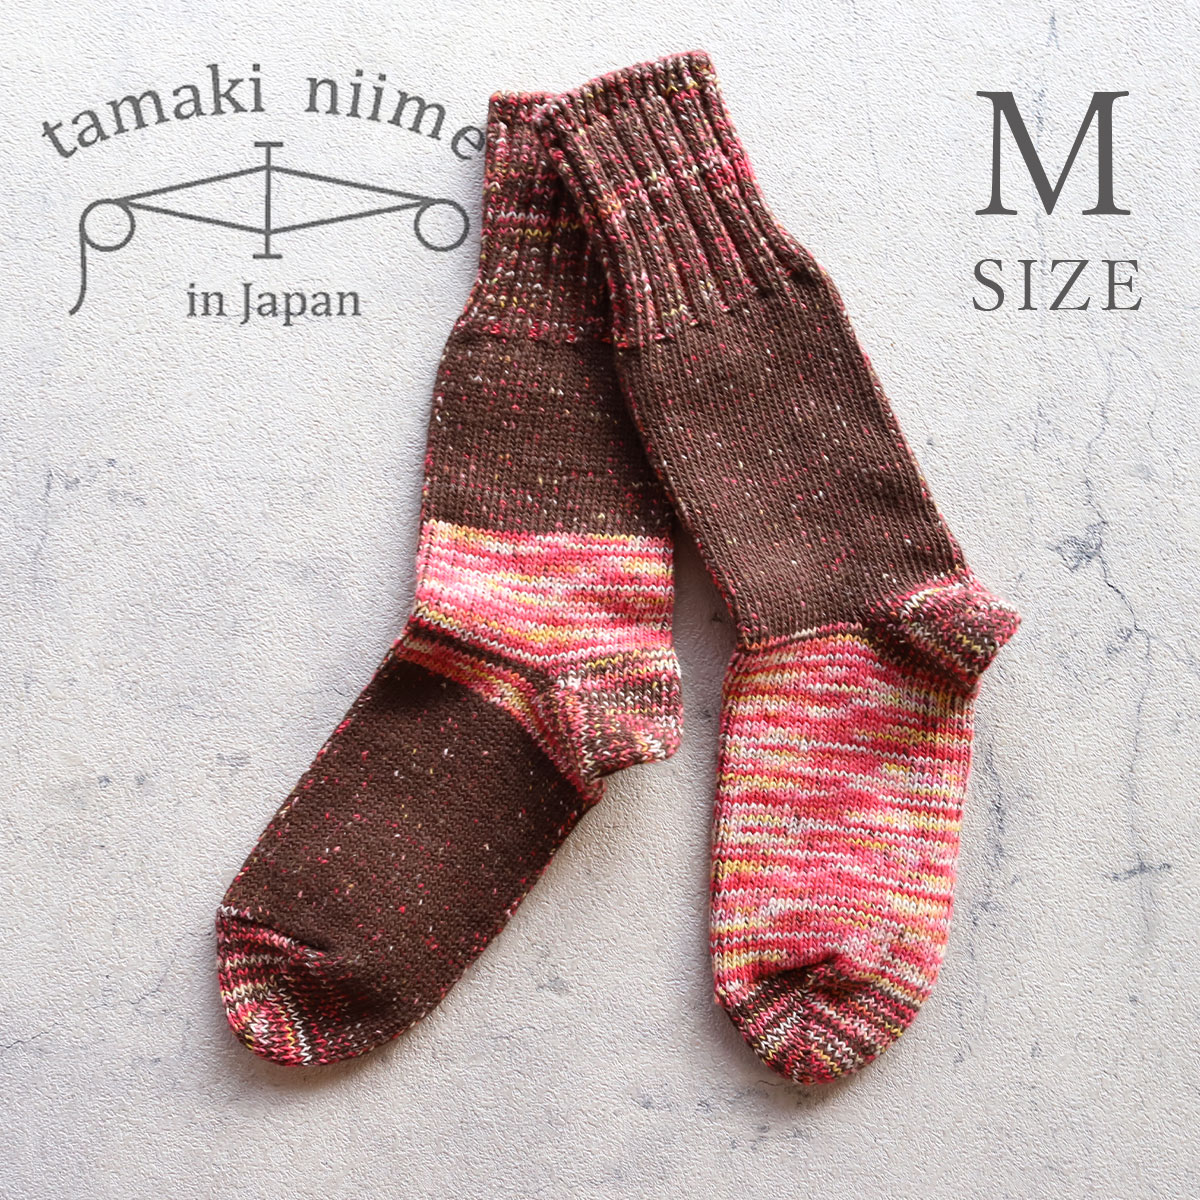 tamaki niime コットン靴下(M) くつなか 22-24cm 播州織 玉木新雌 全て一点もの プレゼントにも。